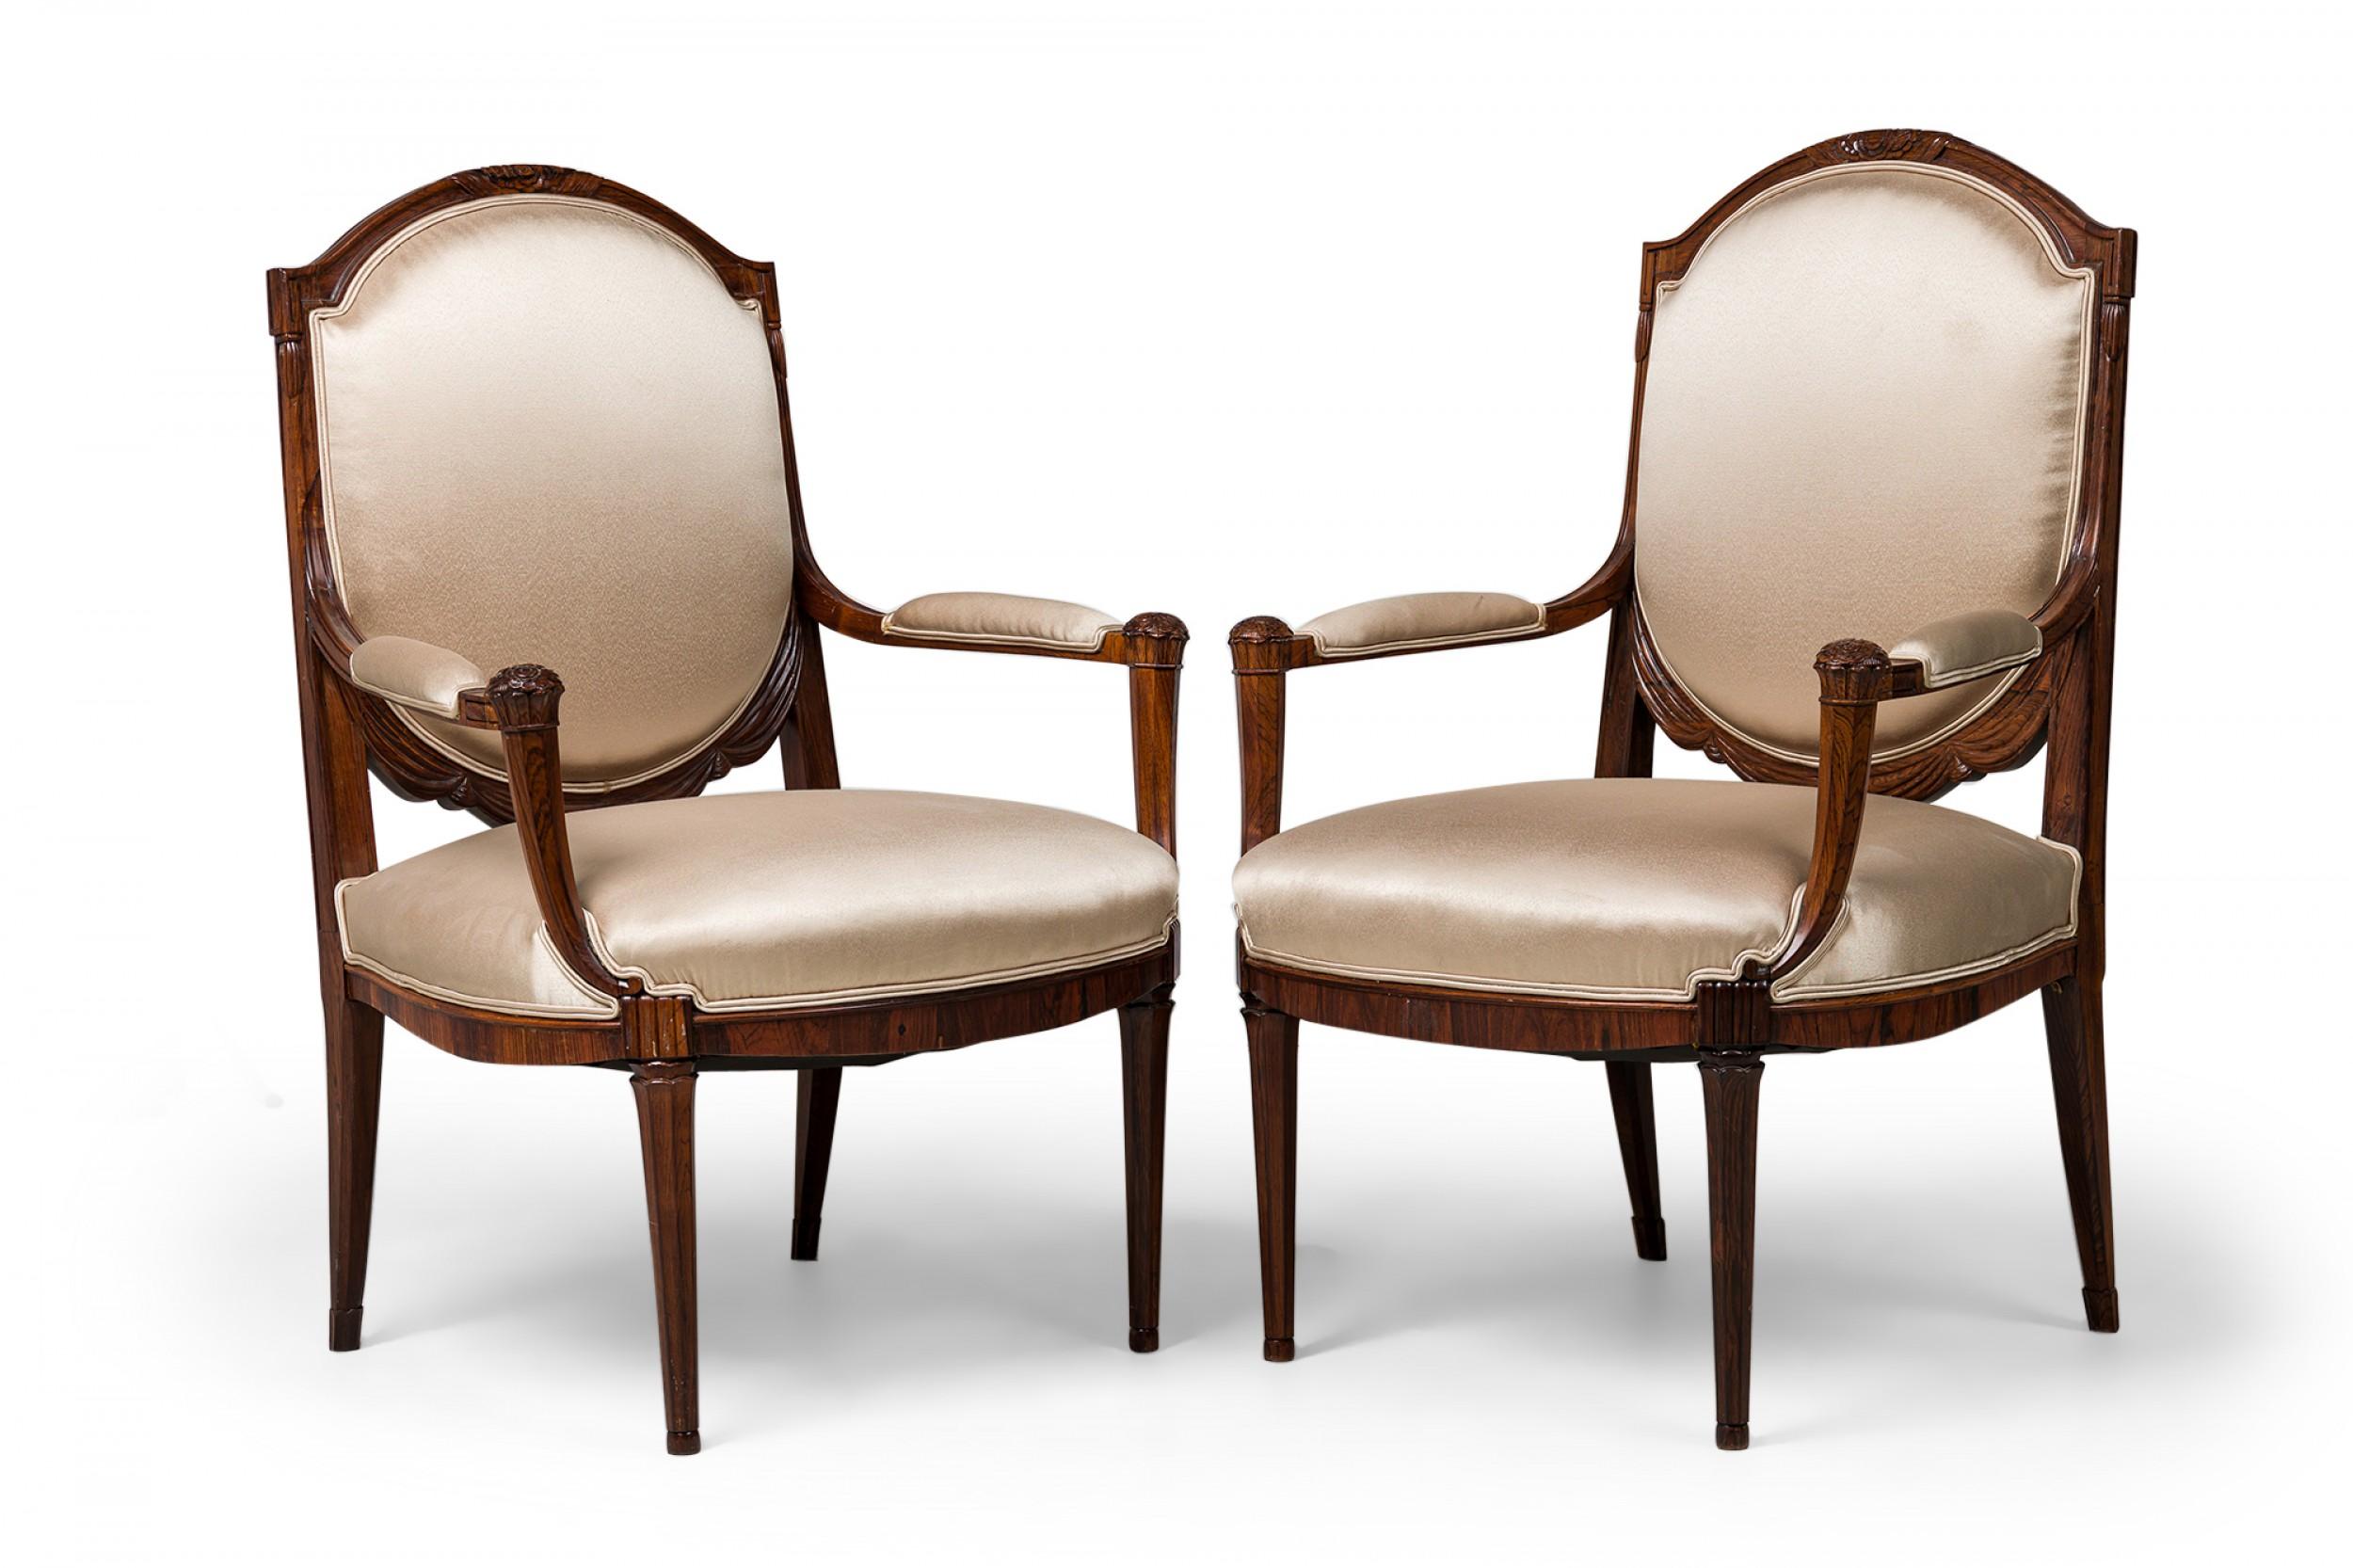 PAIRE de fauteuils en acajou de la fin de l'Art Déco français, à dossier ovale sculpté de feuillages en arc de cercle, avec draperies et rosettes aux angles des accoudoirs, garnis d'un tissu de satin beige à double passepoil, reposant sur 4 pieds